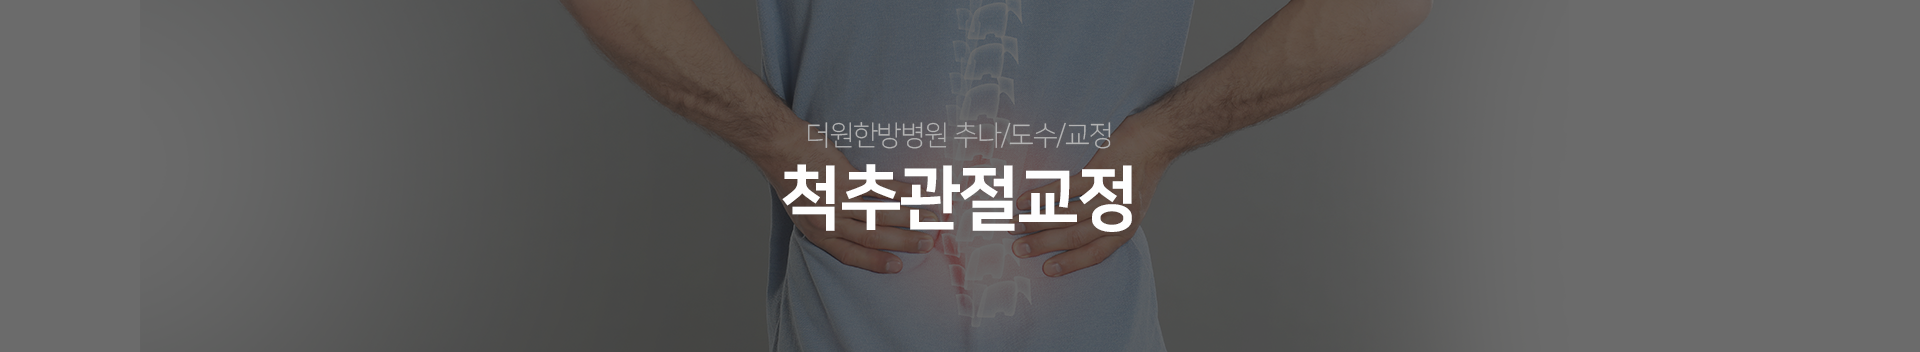 더원한방병원-추나/도수/교정-척추관절교정